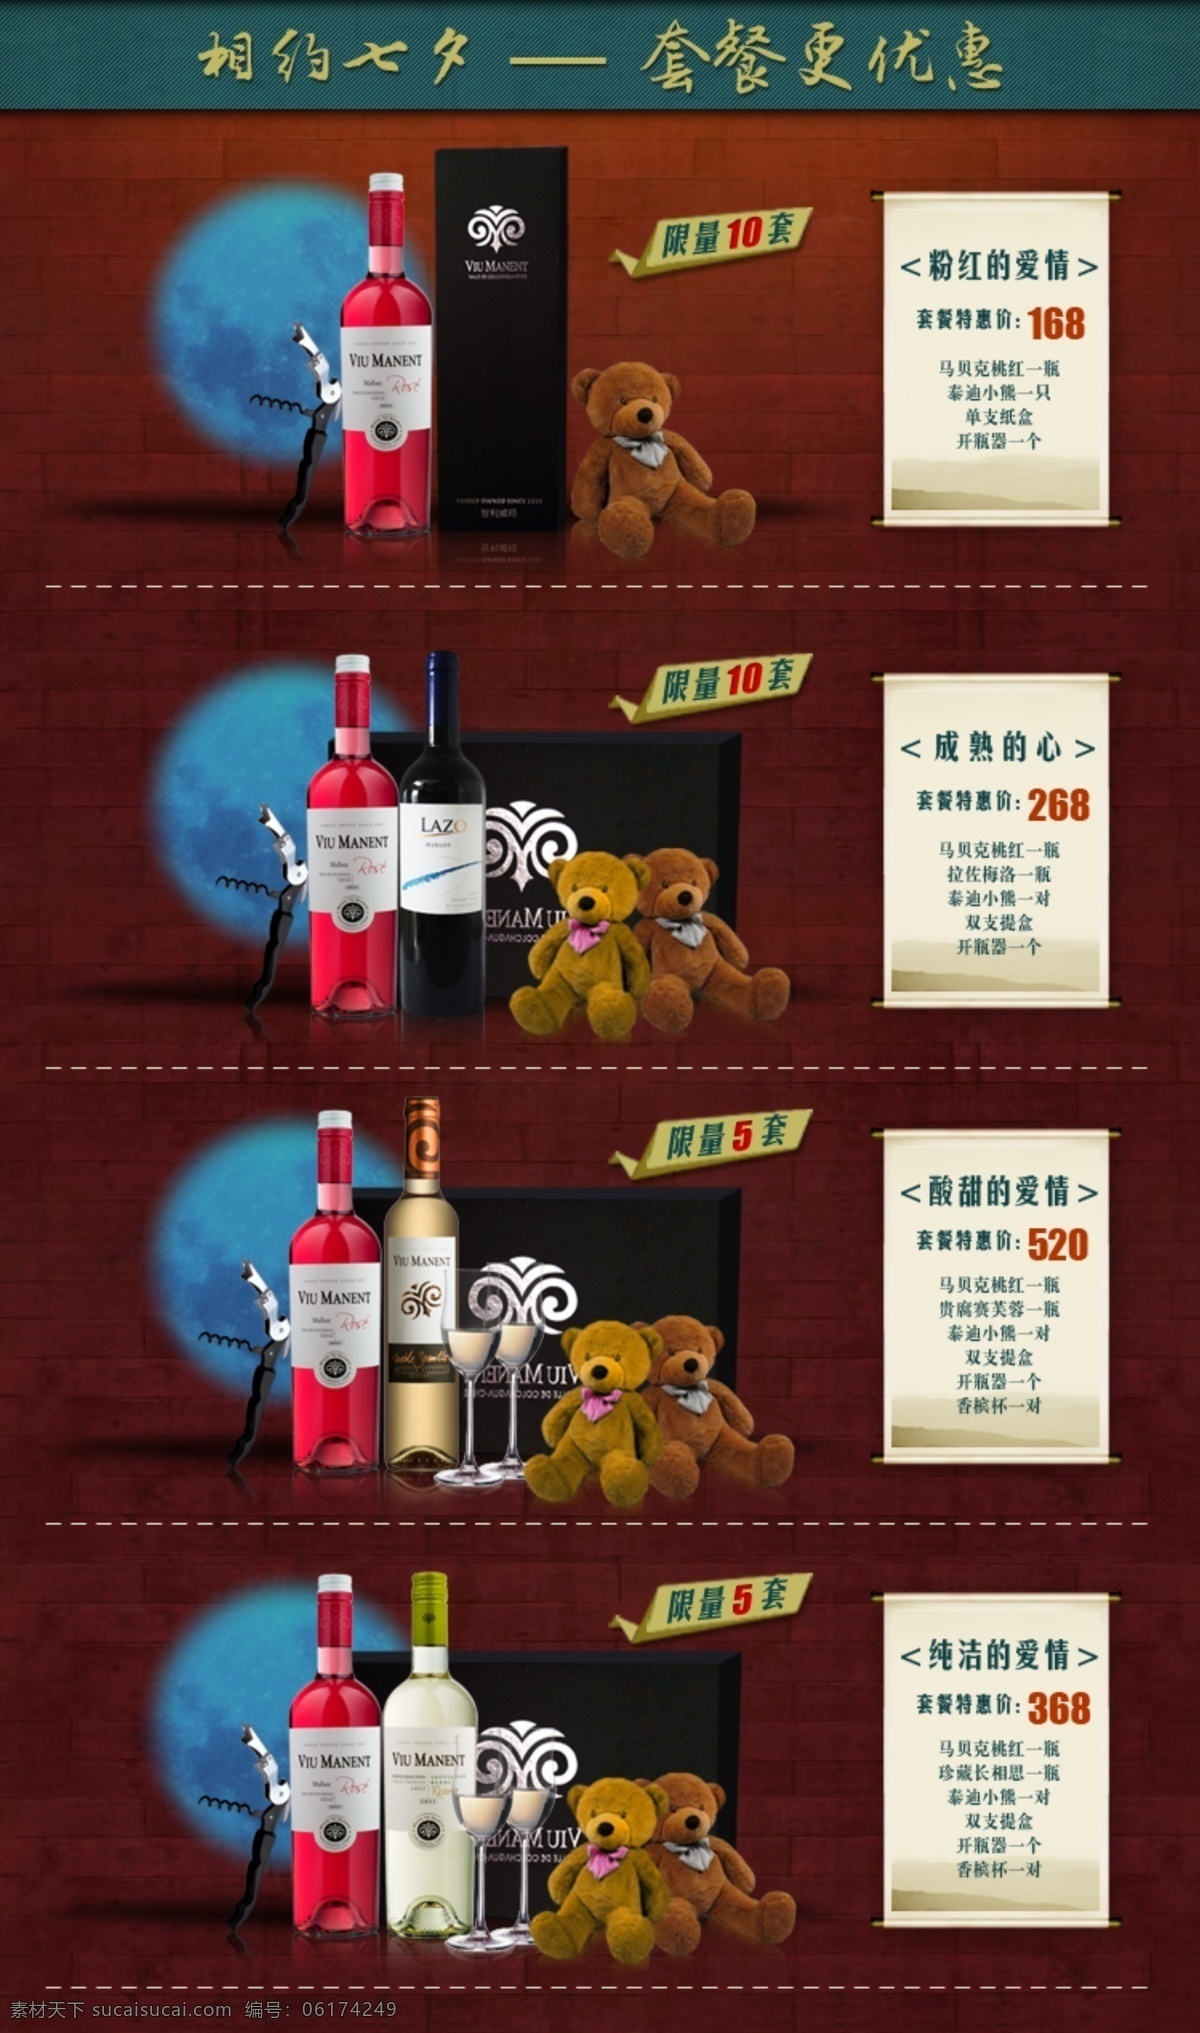 产品 关联 产品关联 关联销售 红酒 葡萄酒 七夕 原创设计 原创淘宝设计